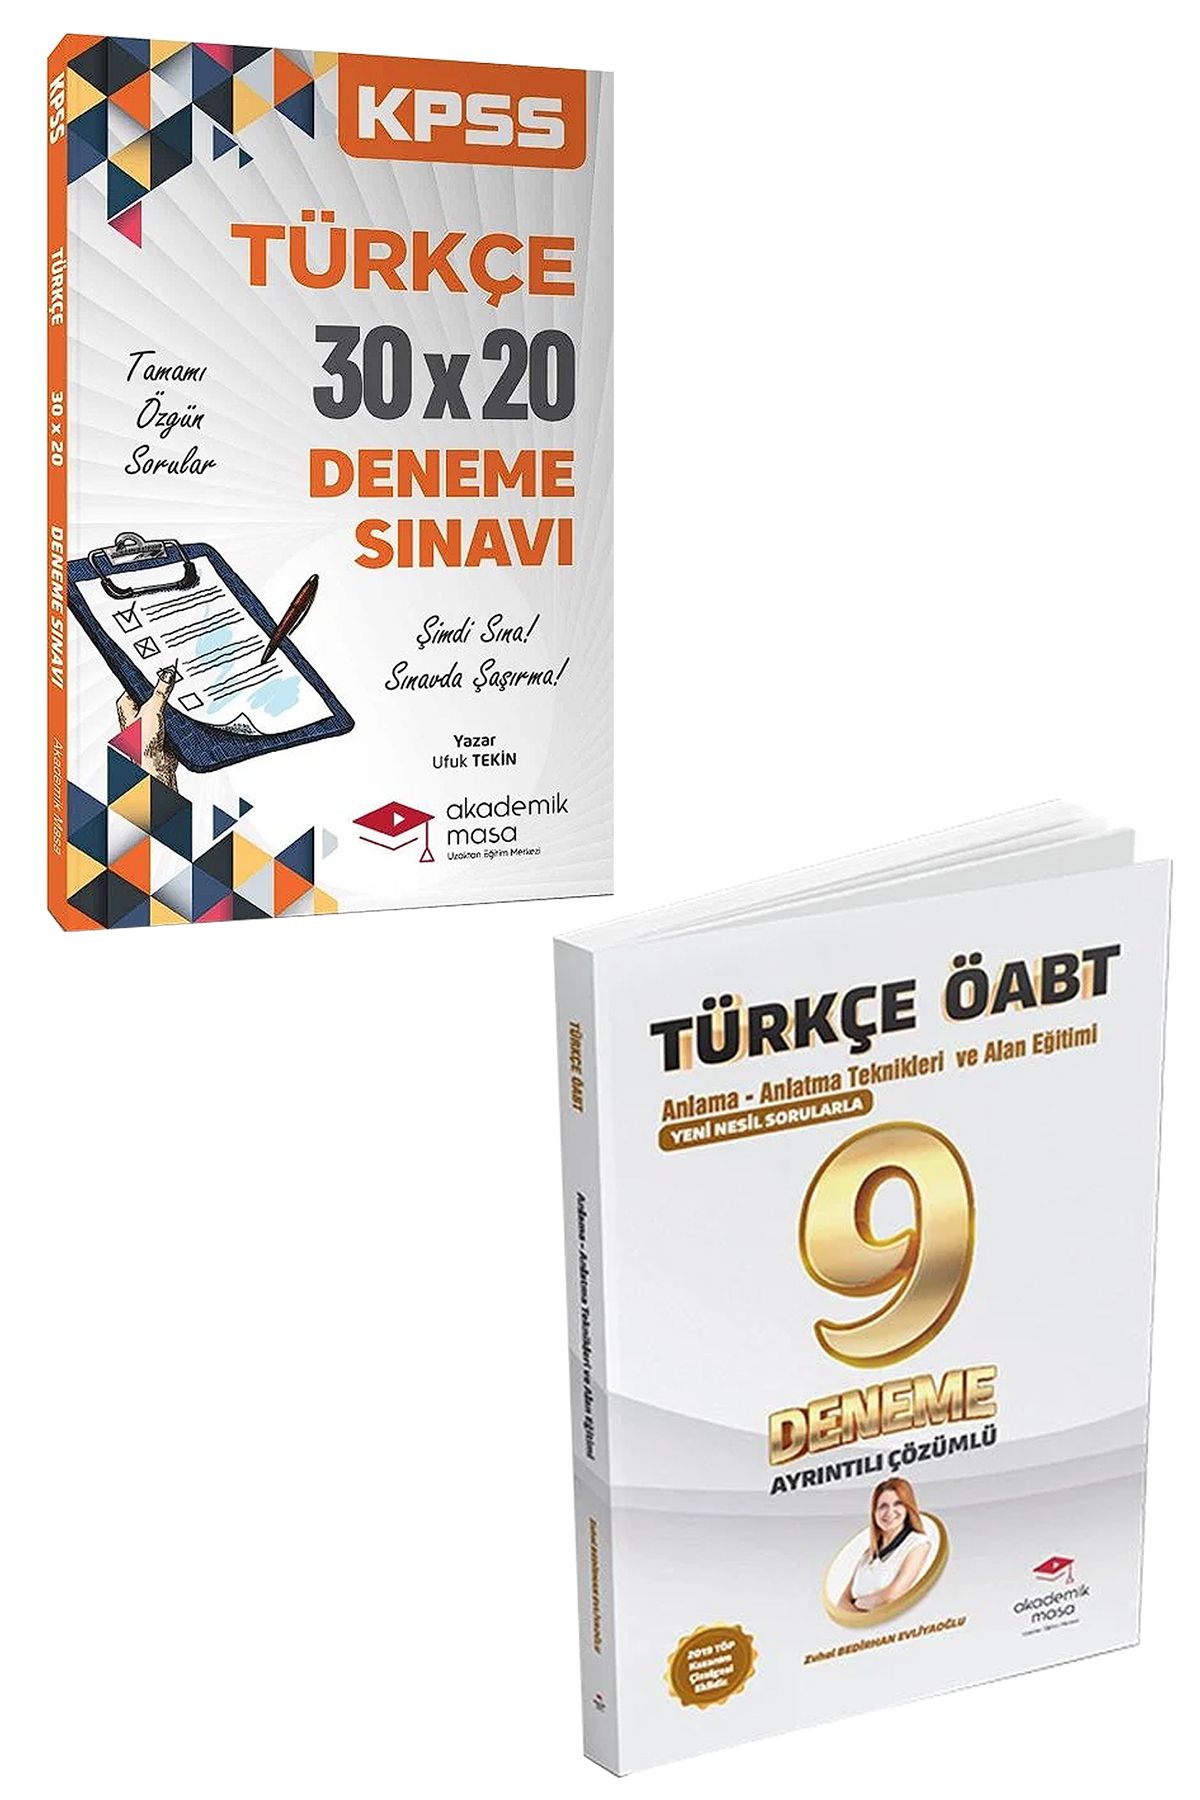 Panem Yayınları Akademik Masa KPSS Türkçe 30x20 Deneme + ÖABT Türkçe Ayrıntılı Çözümlü 9 Deneme